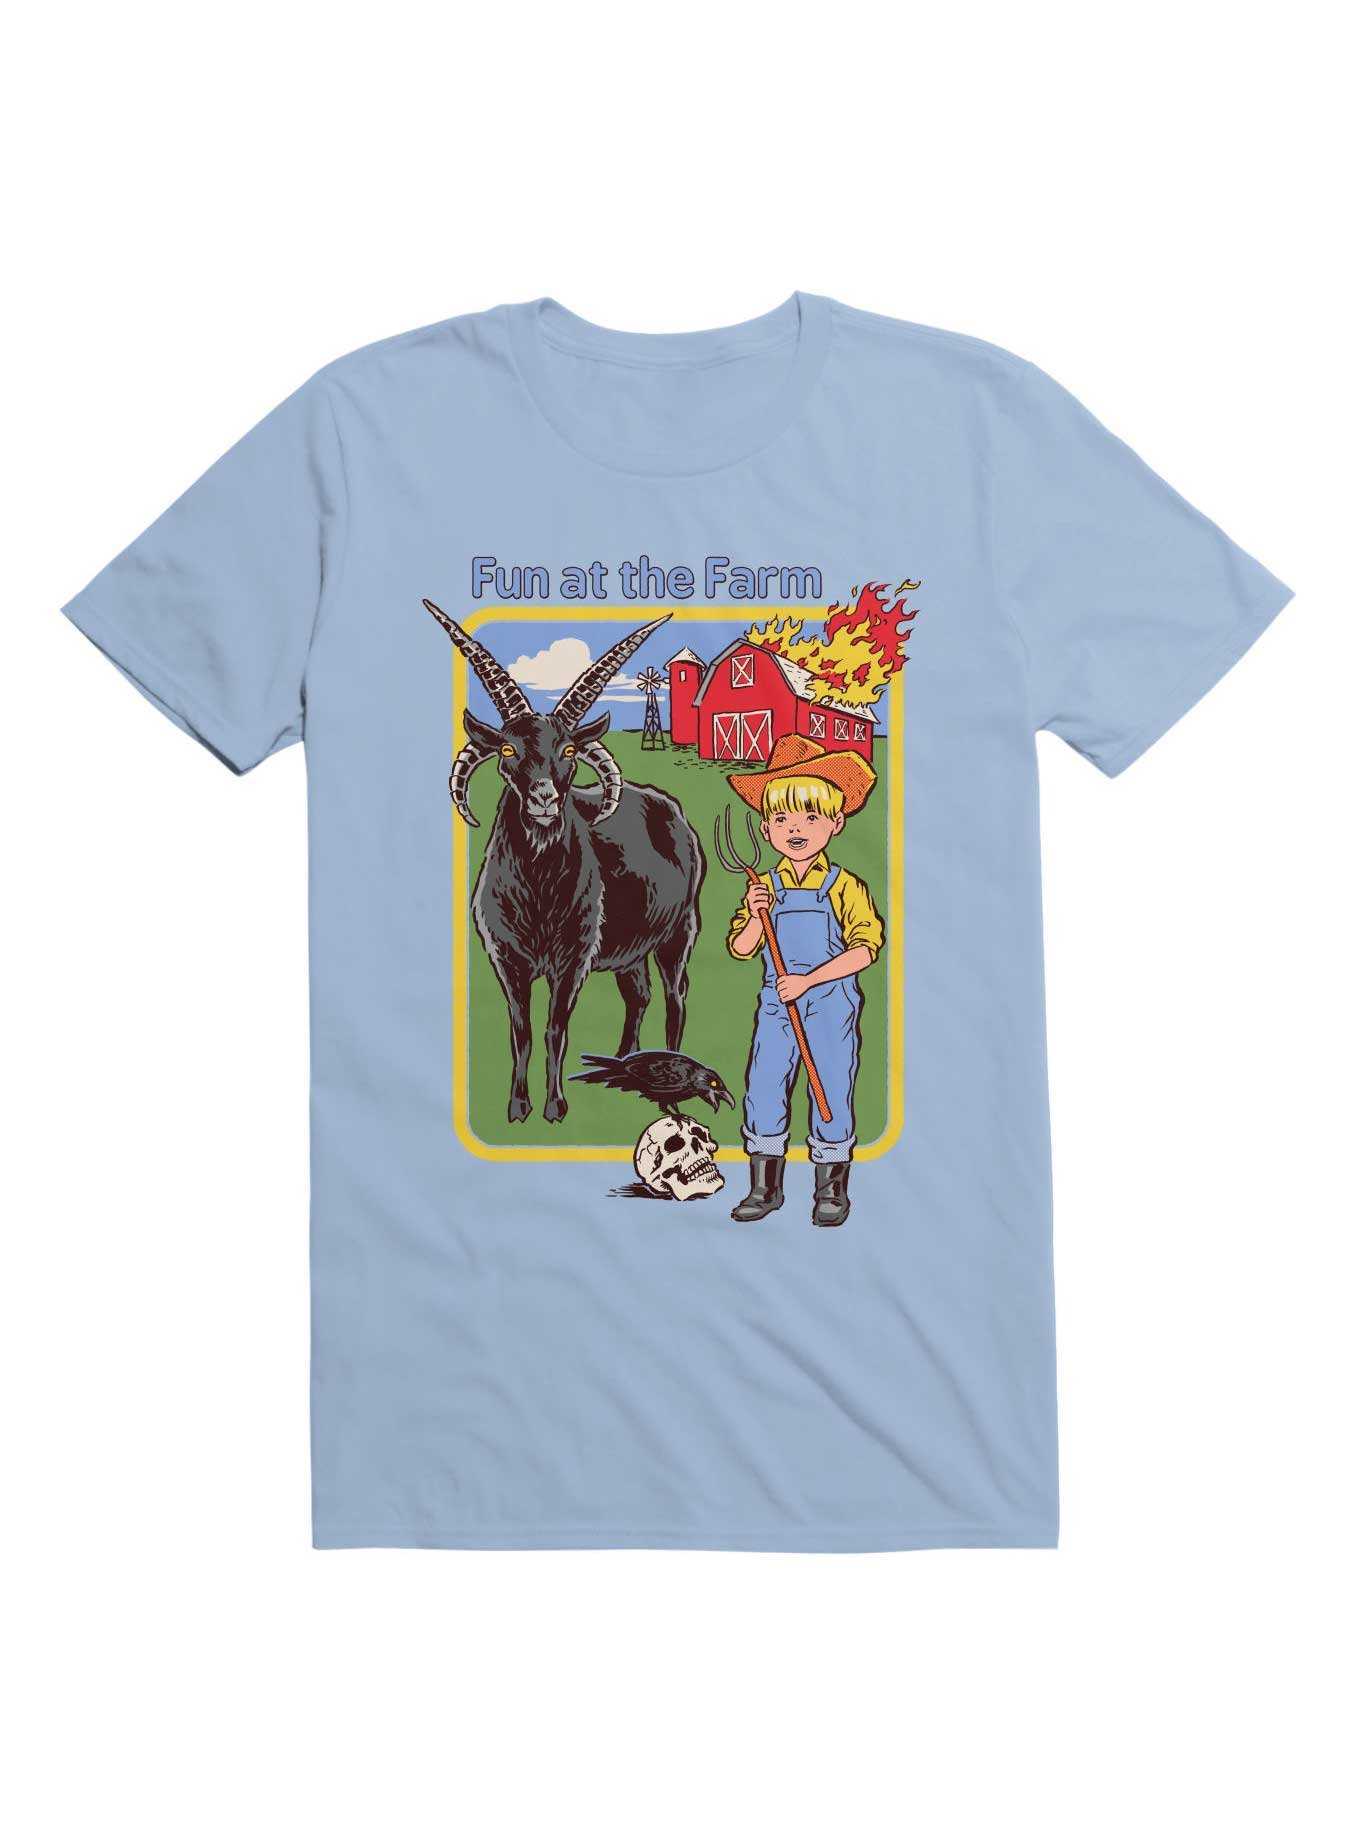 Fun at the Farm T-Shirt By Steven Rhodes, , hi-res